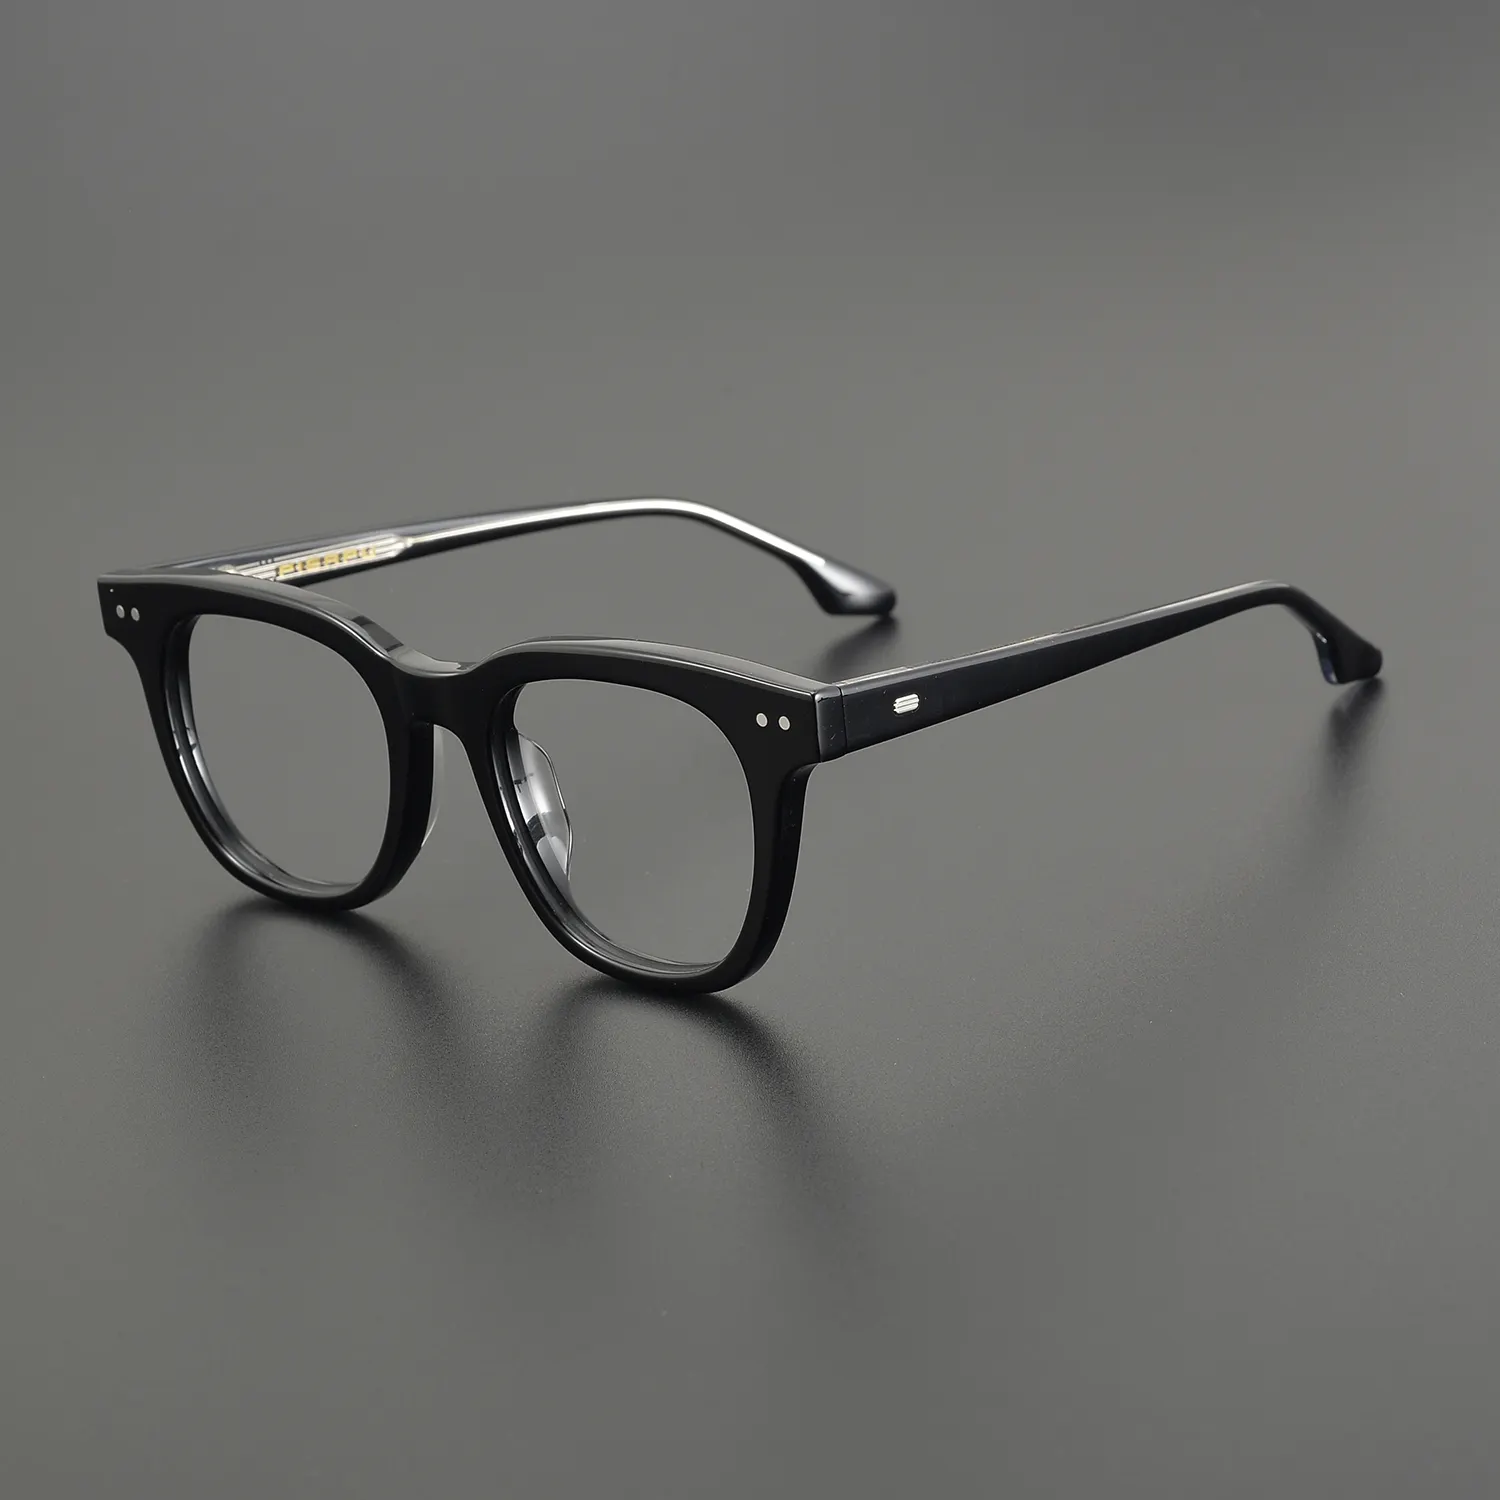 패션 수제 두꺼운 아세테이트 안경 프레임 디자인 직사각형 안경 광학 안경 처방 안경 프레임